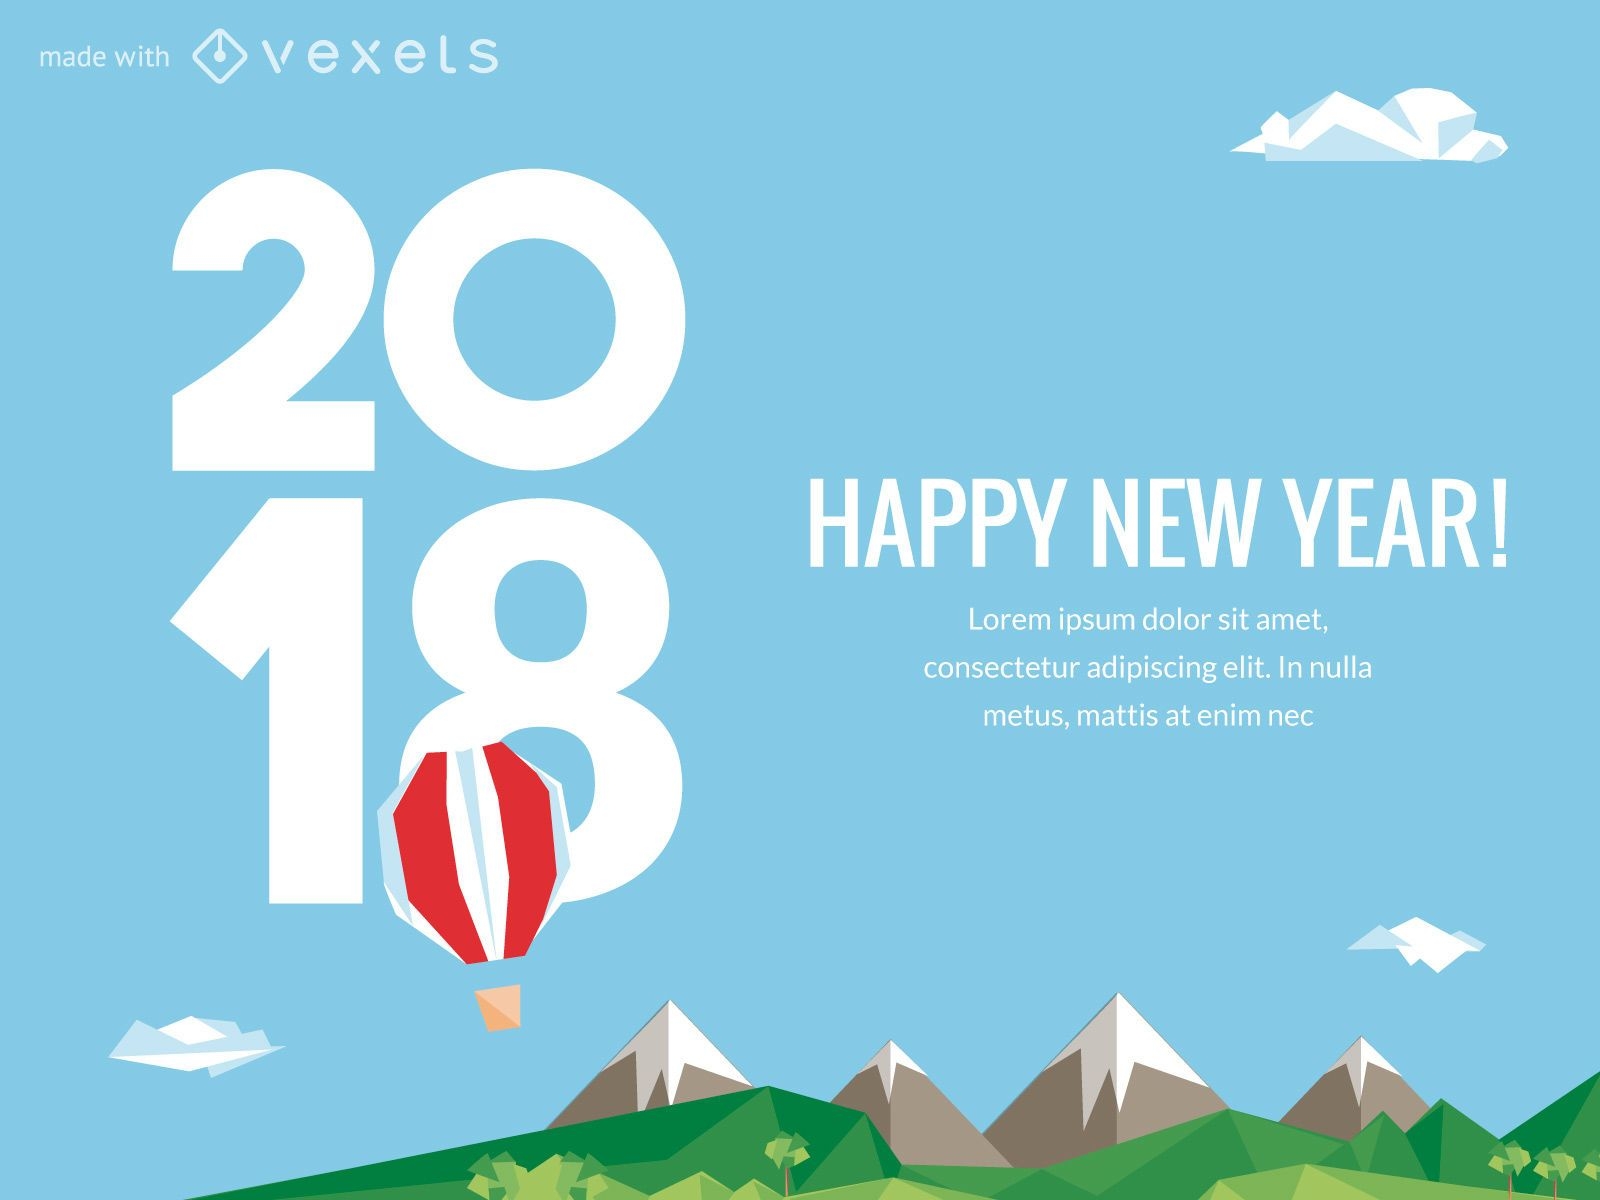 Criador de cartaz de ano novo de 2018 com op?es